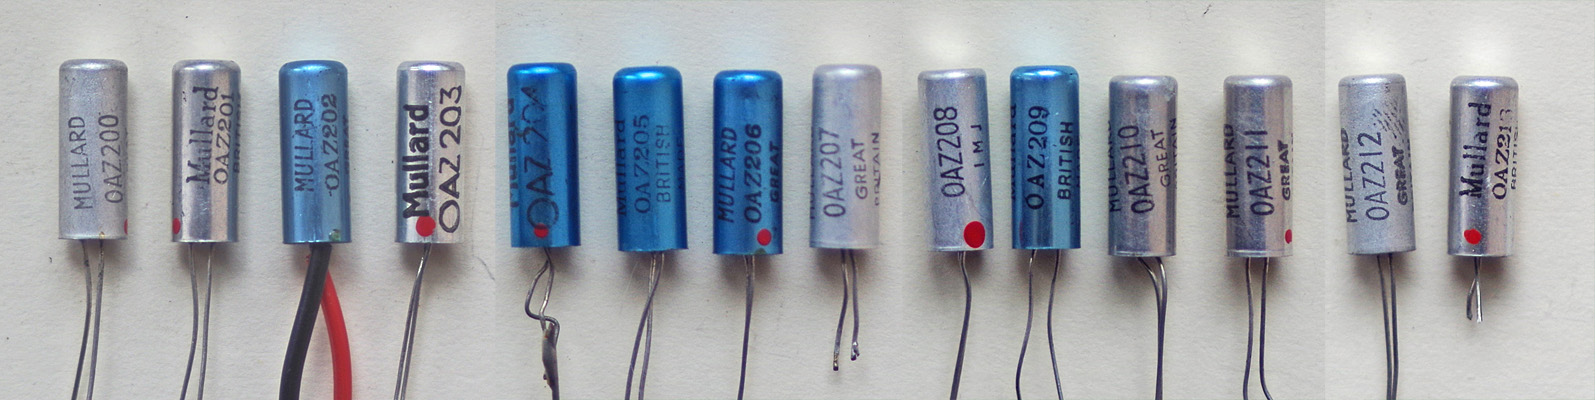 OAZ200 diodes